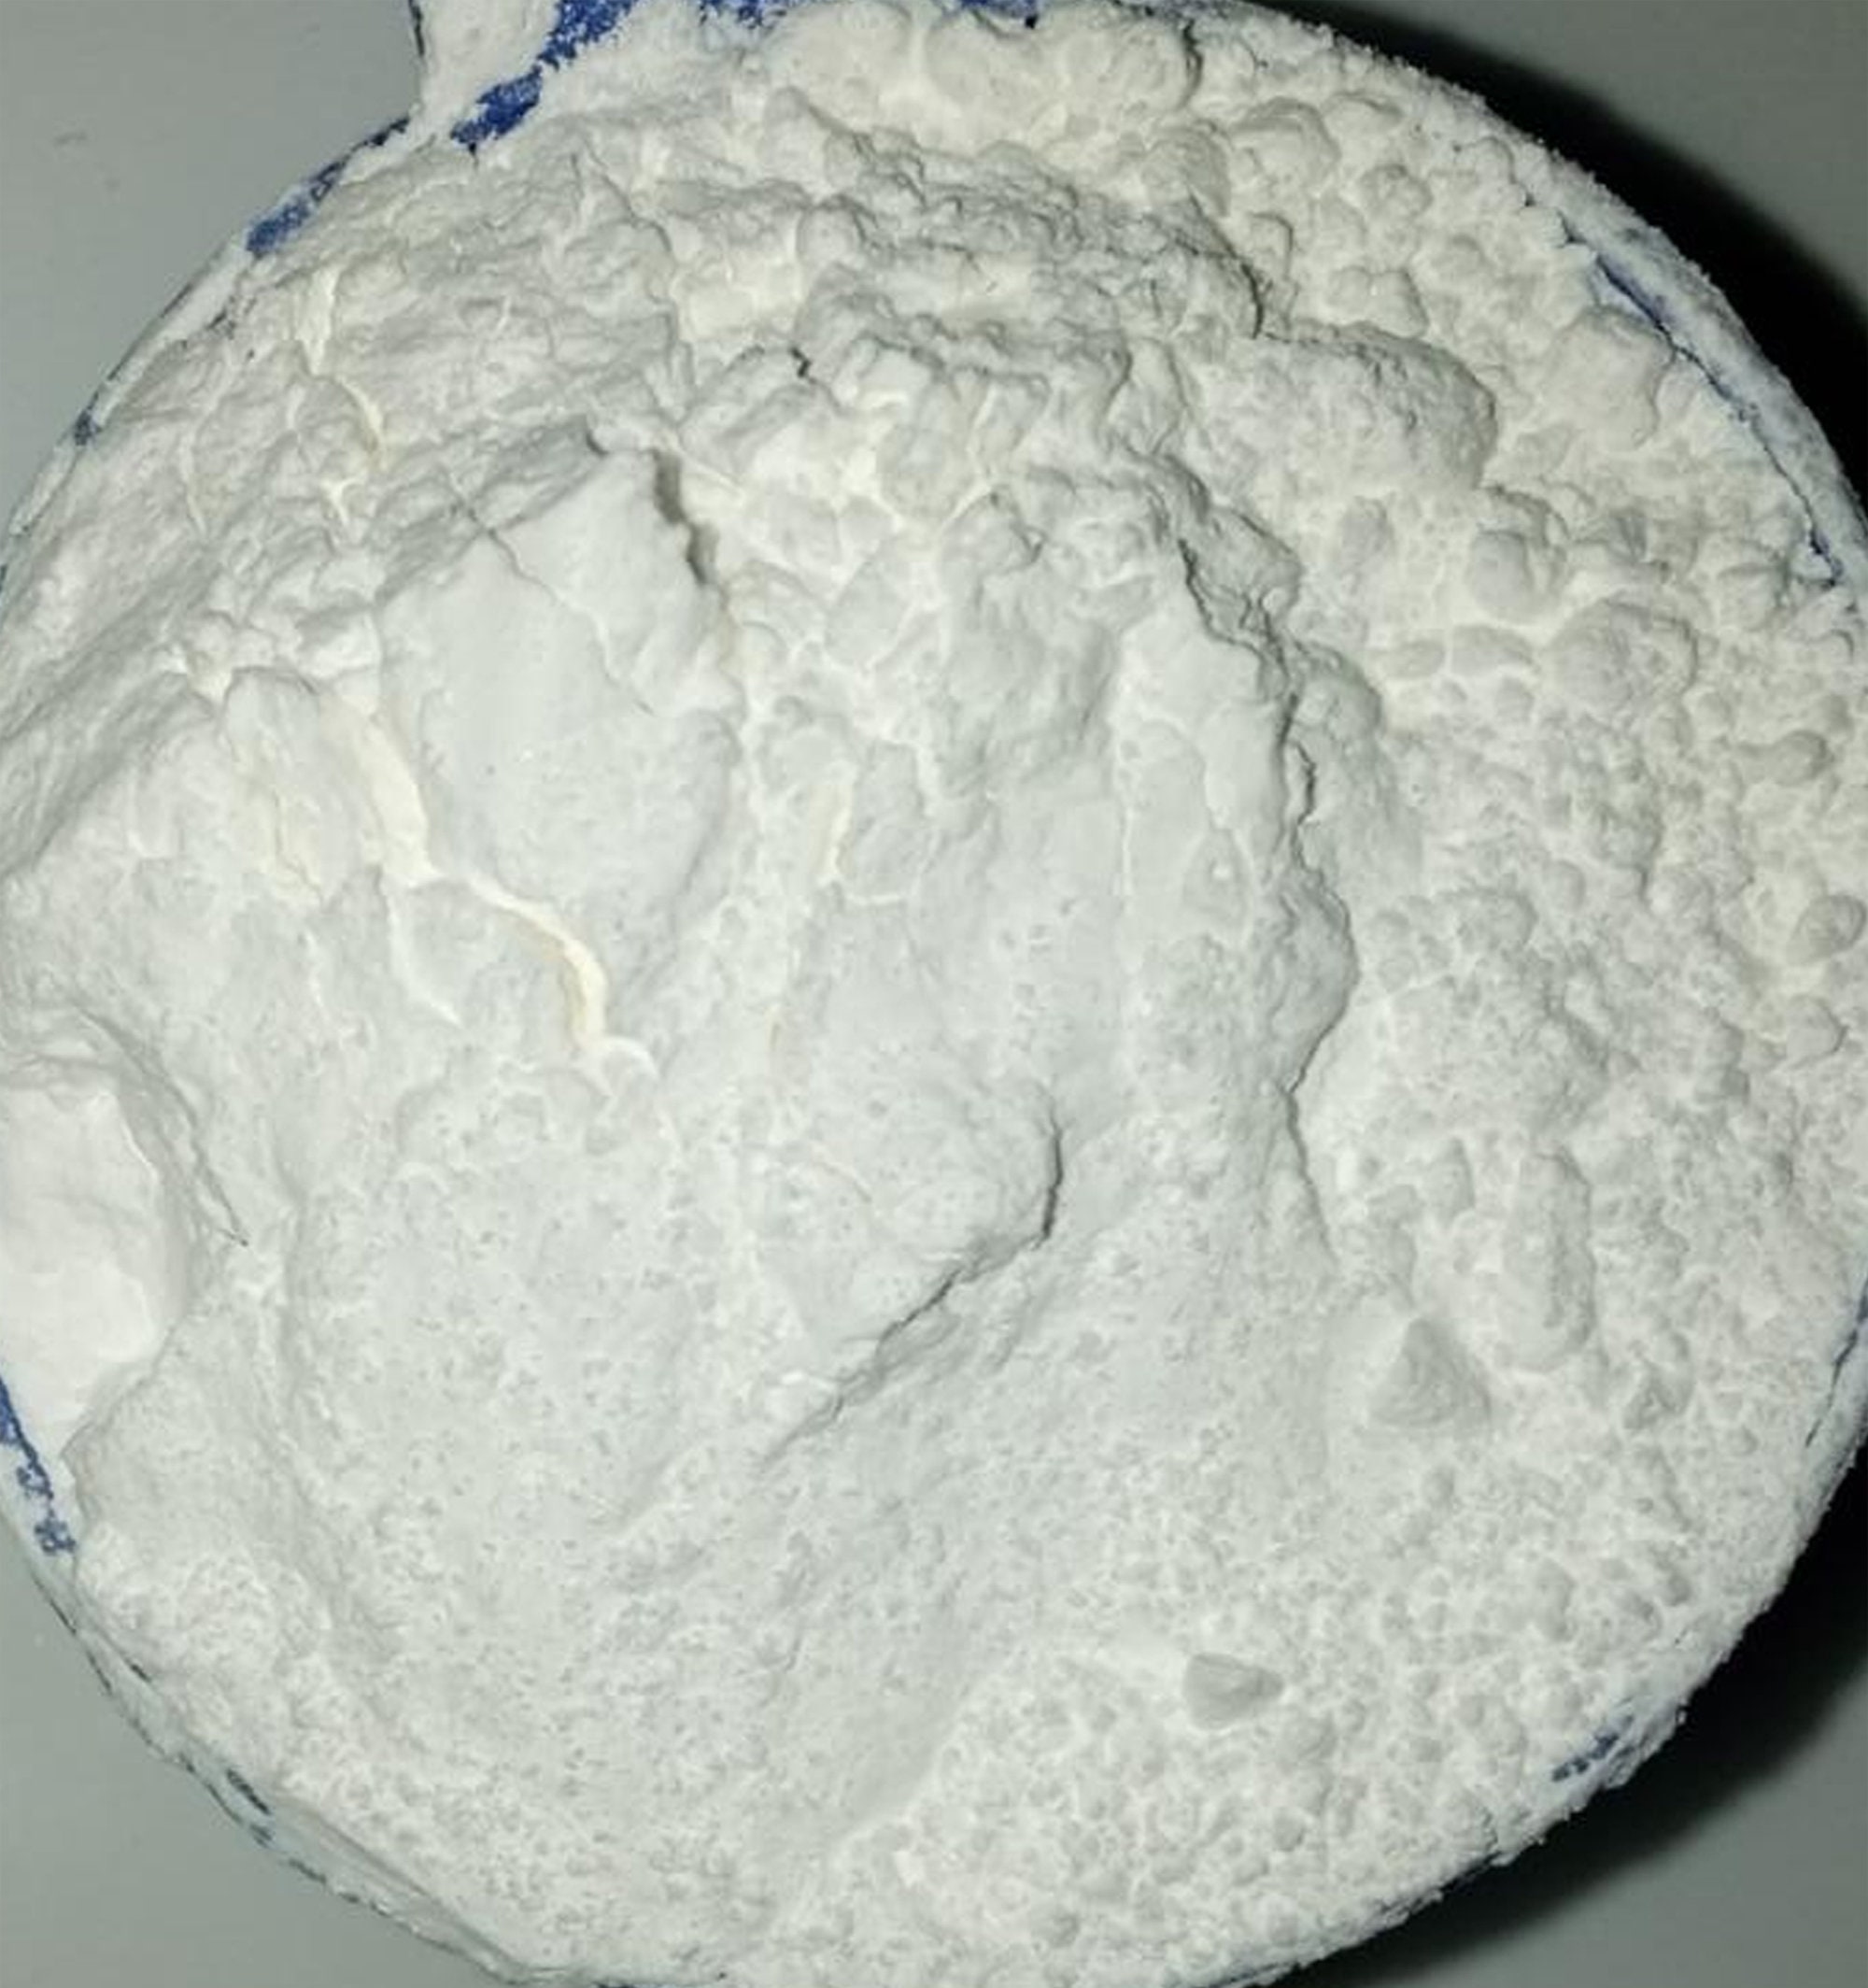 Sodium COCOYL ISETHIONATE (SCI) - Anionic, Foaming Surfactant